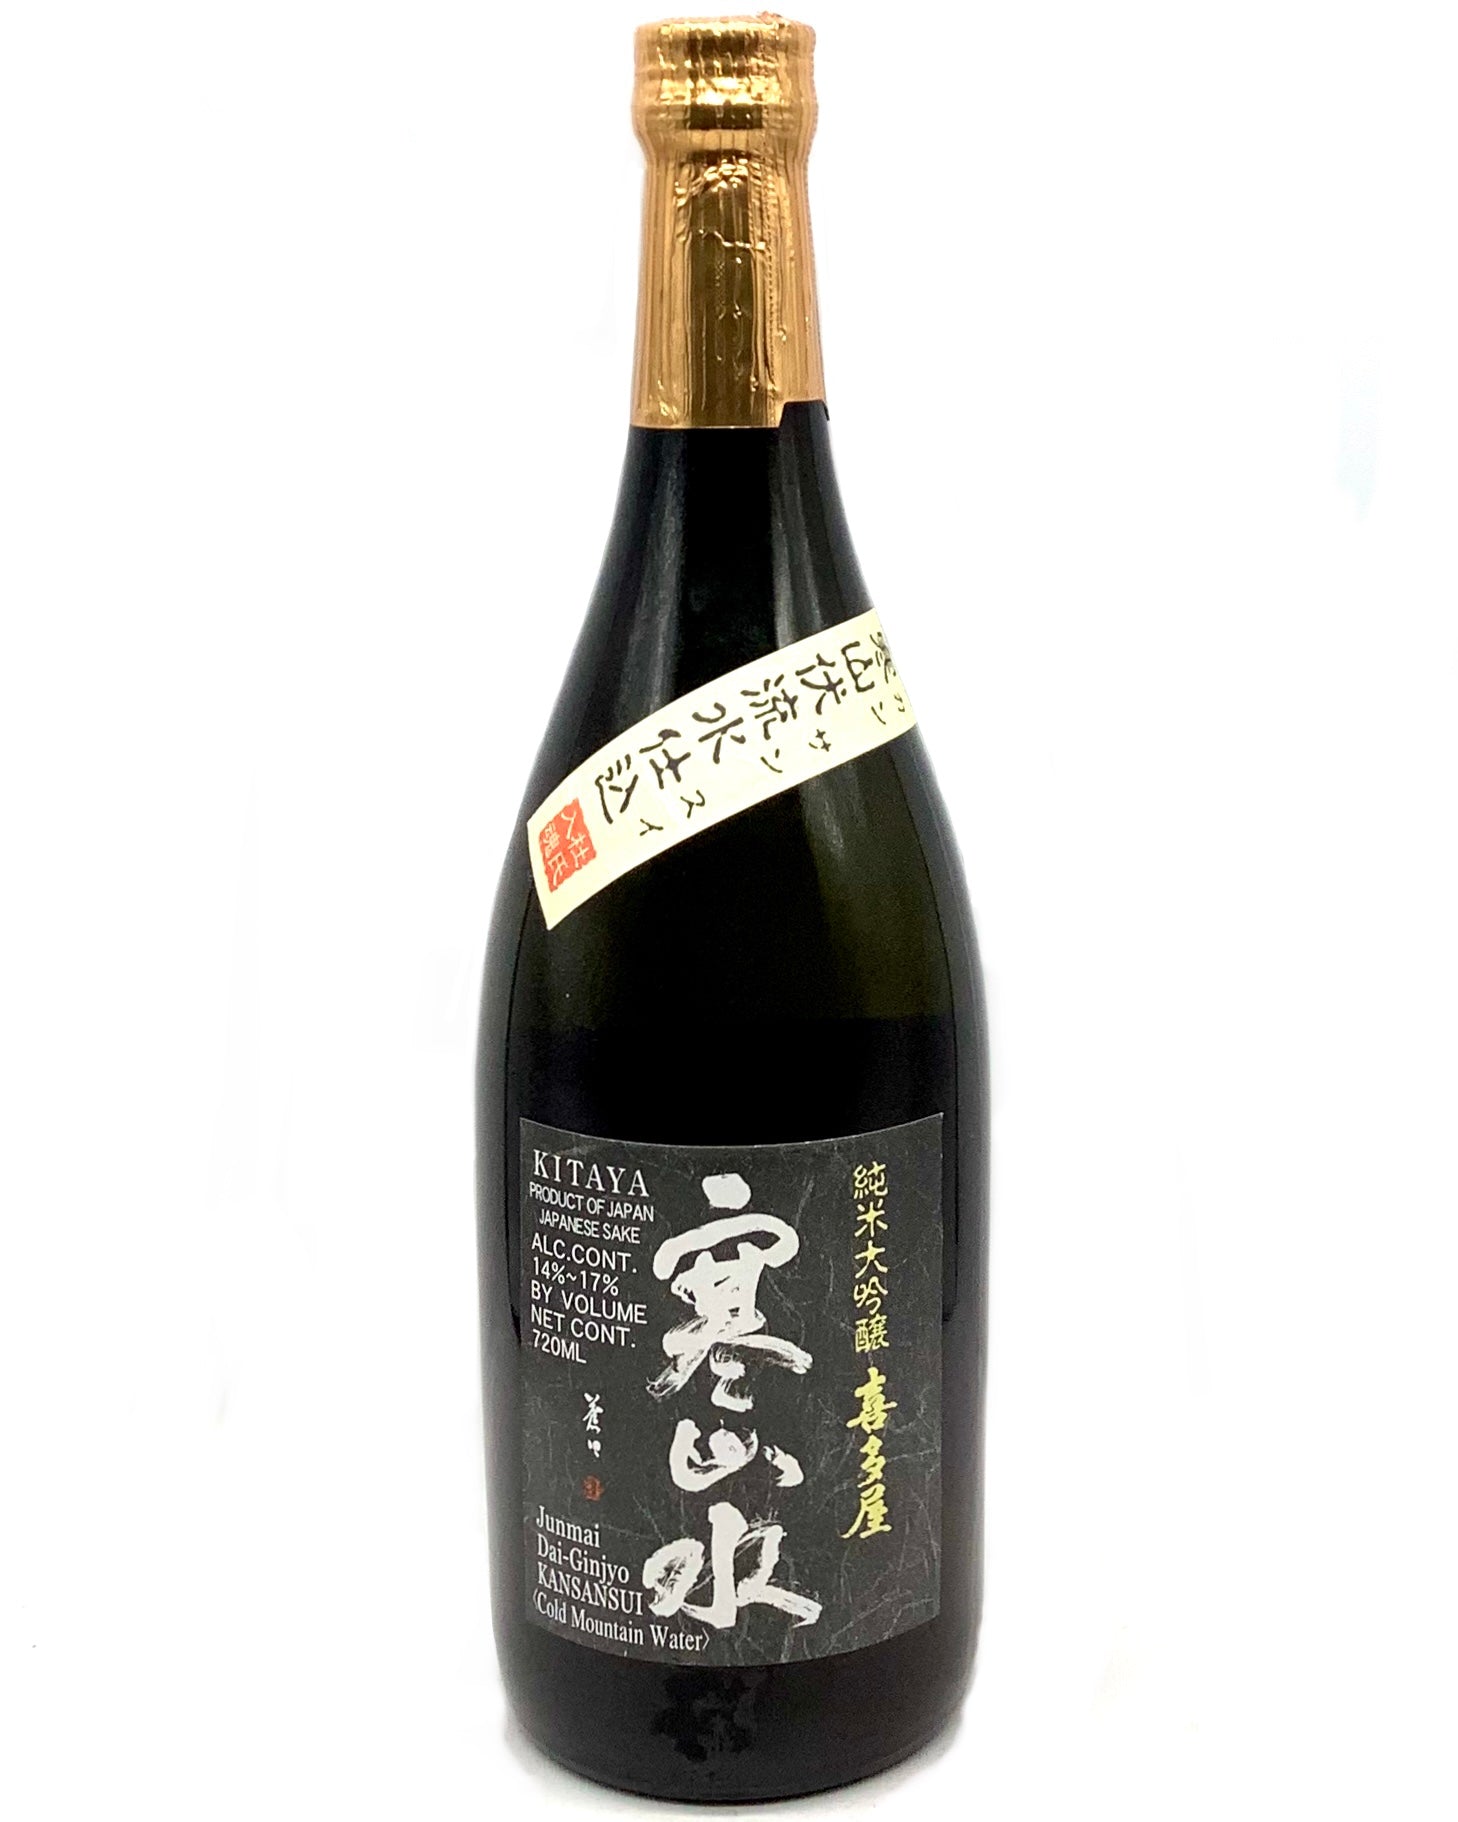 Kitaya "Kansansui" Junmai Dai-Ginjyo Sake 720ml sake